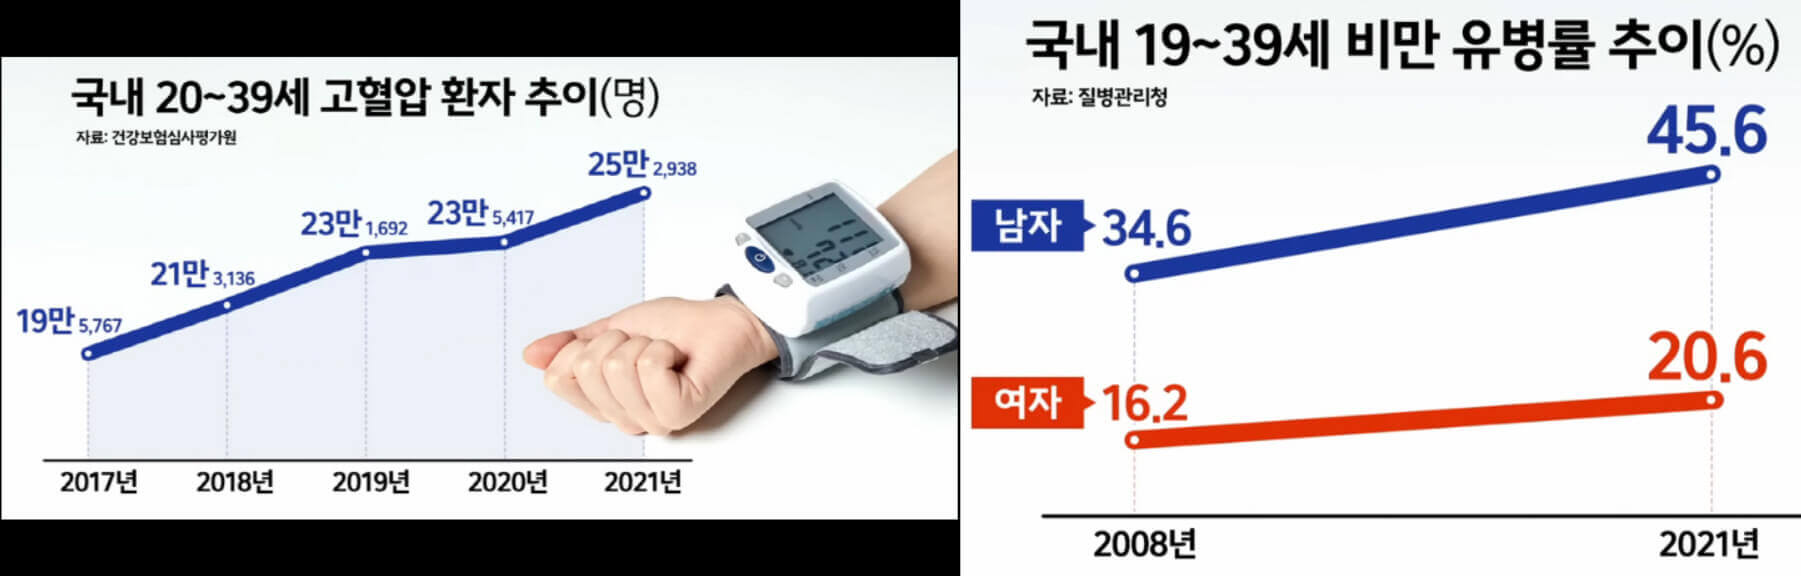 국내-2030-세대-고혈압과-비만율-추이